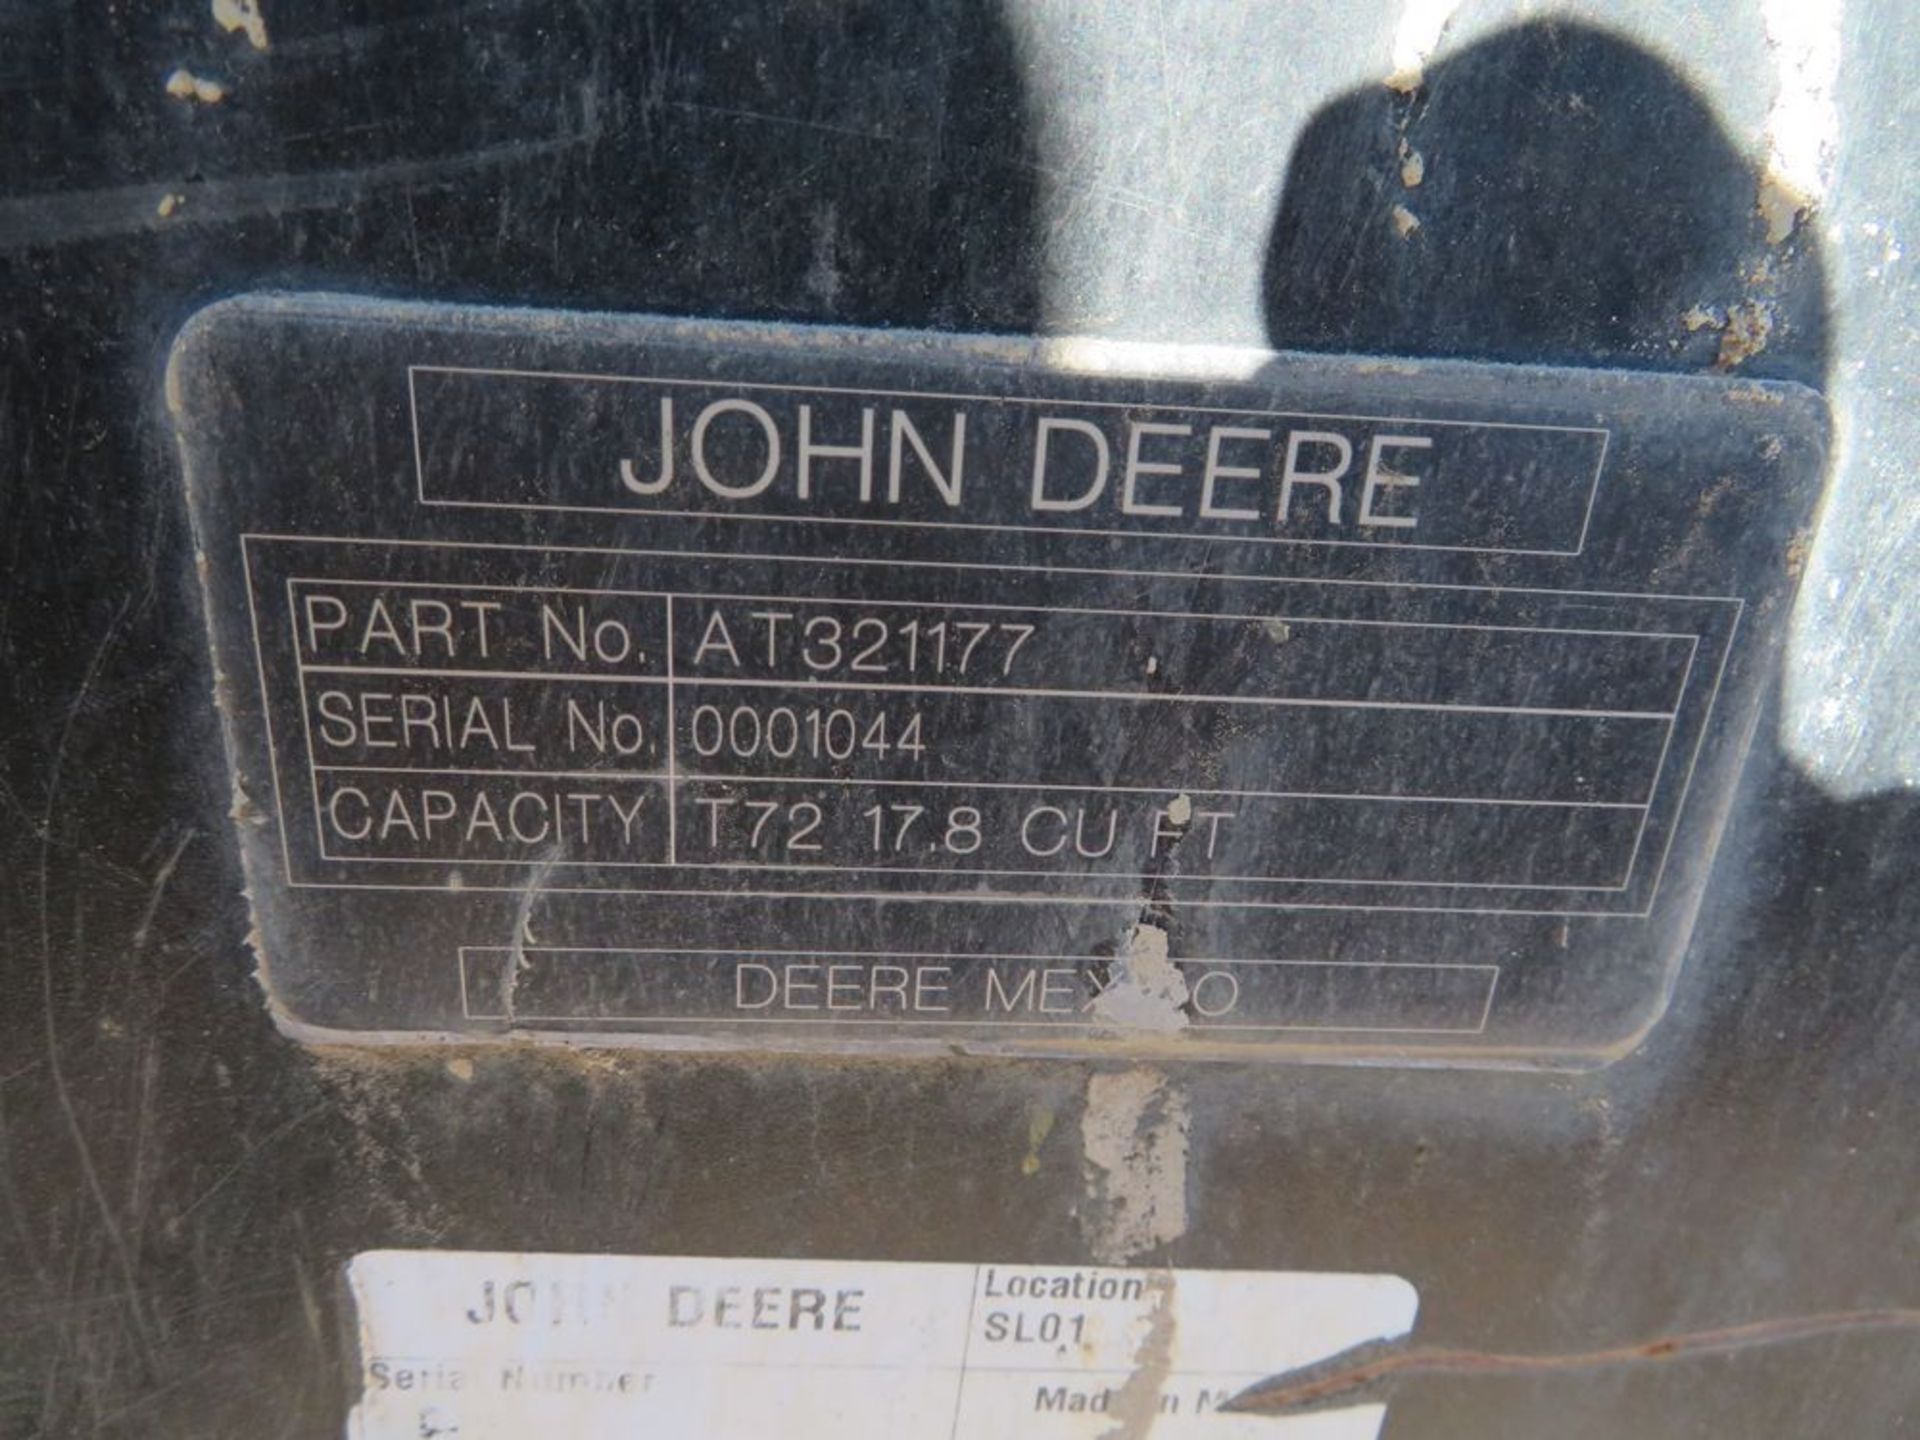 (2017) John Deere mod. T-72, 72" Low Profile Bucket w/ Bolts on Teeth; S/N 0001044 - Image 3 of 3